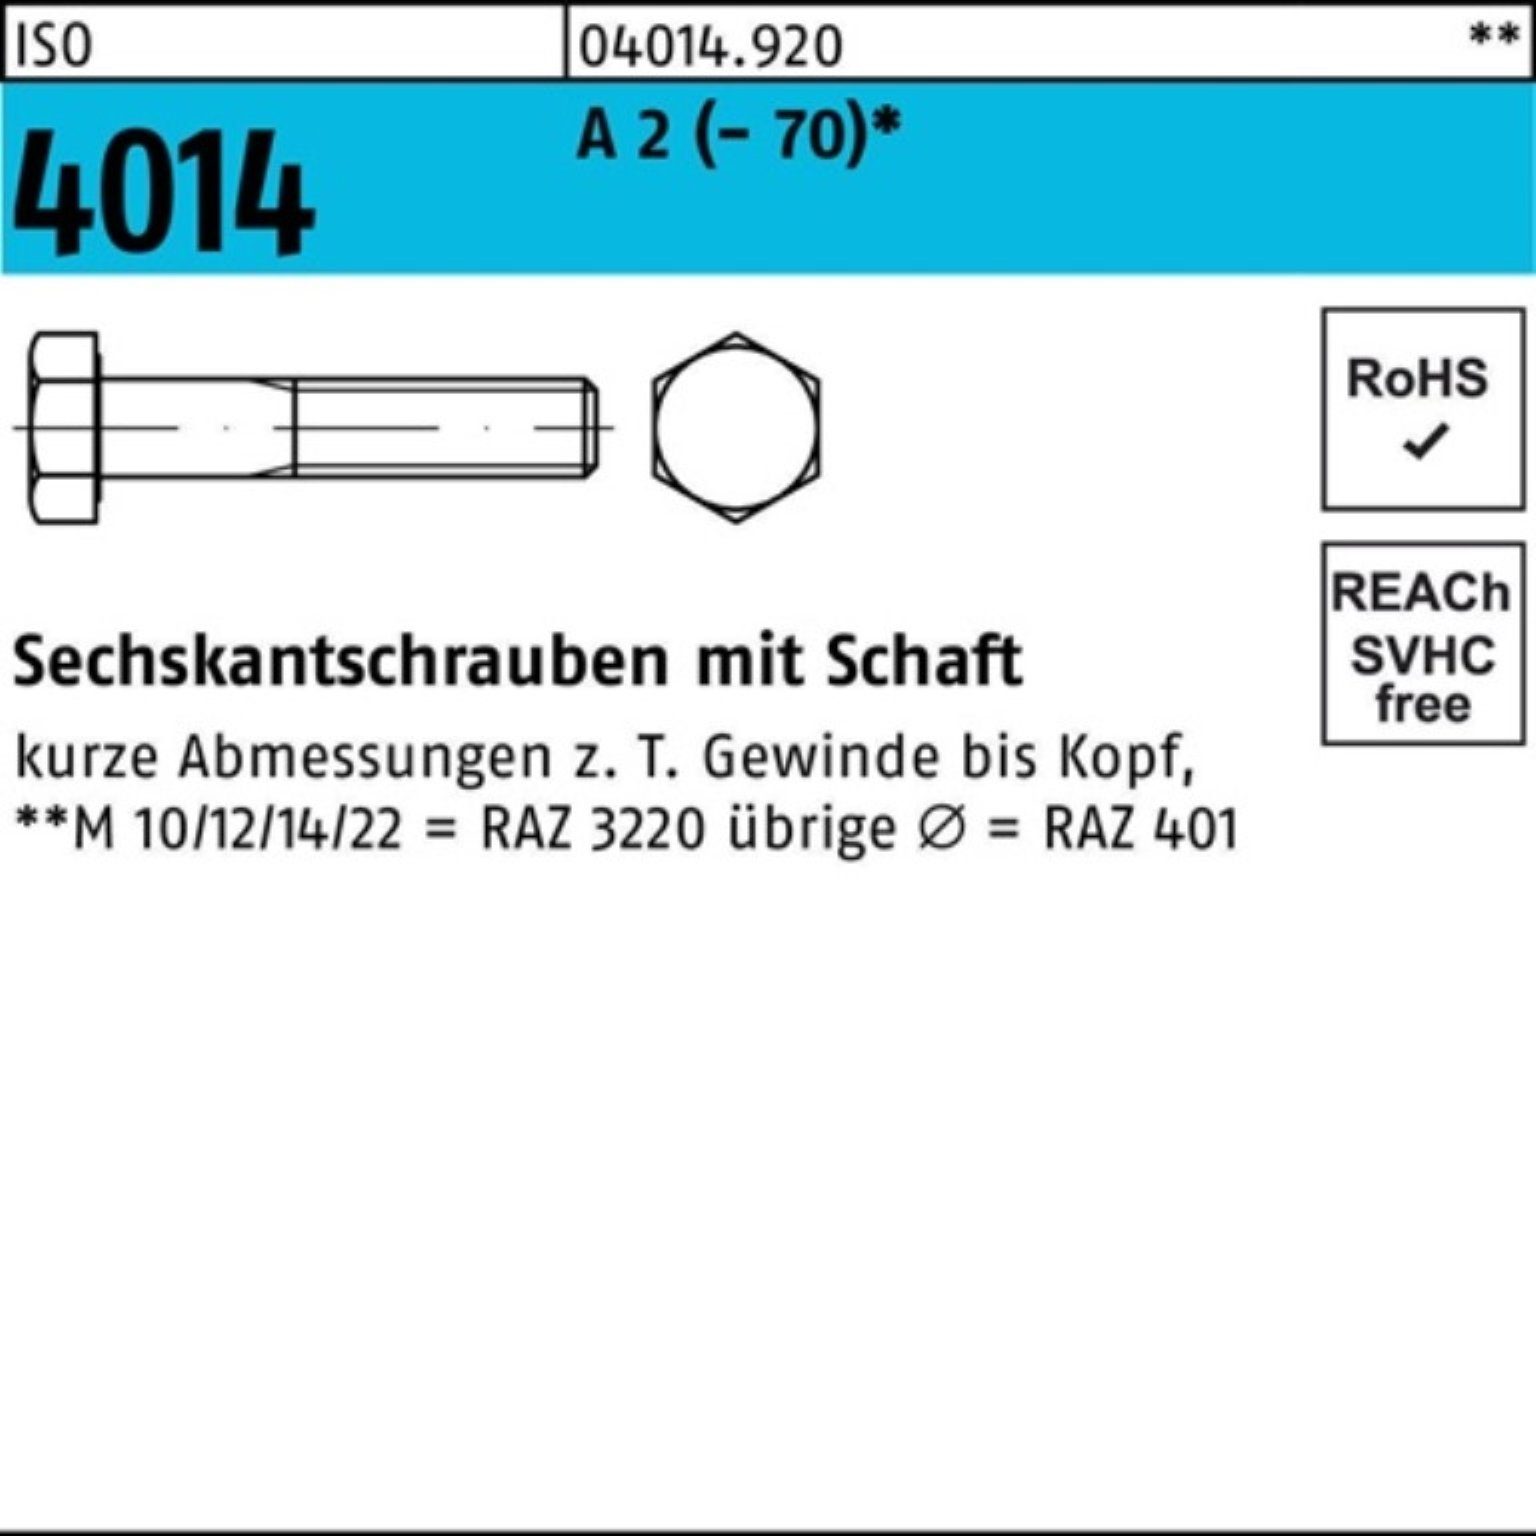 Bufab Sechskantschraube 100er A Schaft M16x 110 25 4014 Pack (70) St ISO 2 Sechskantschraube